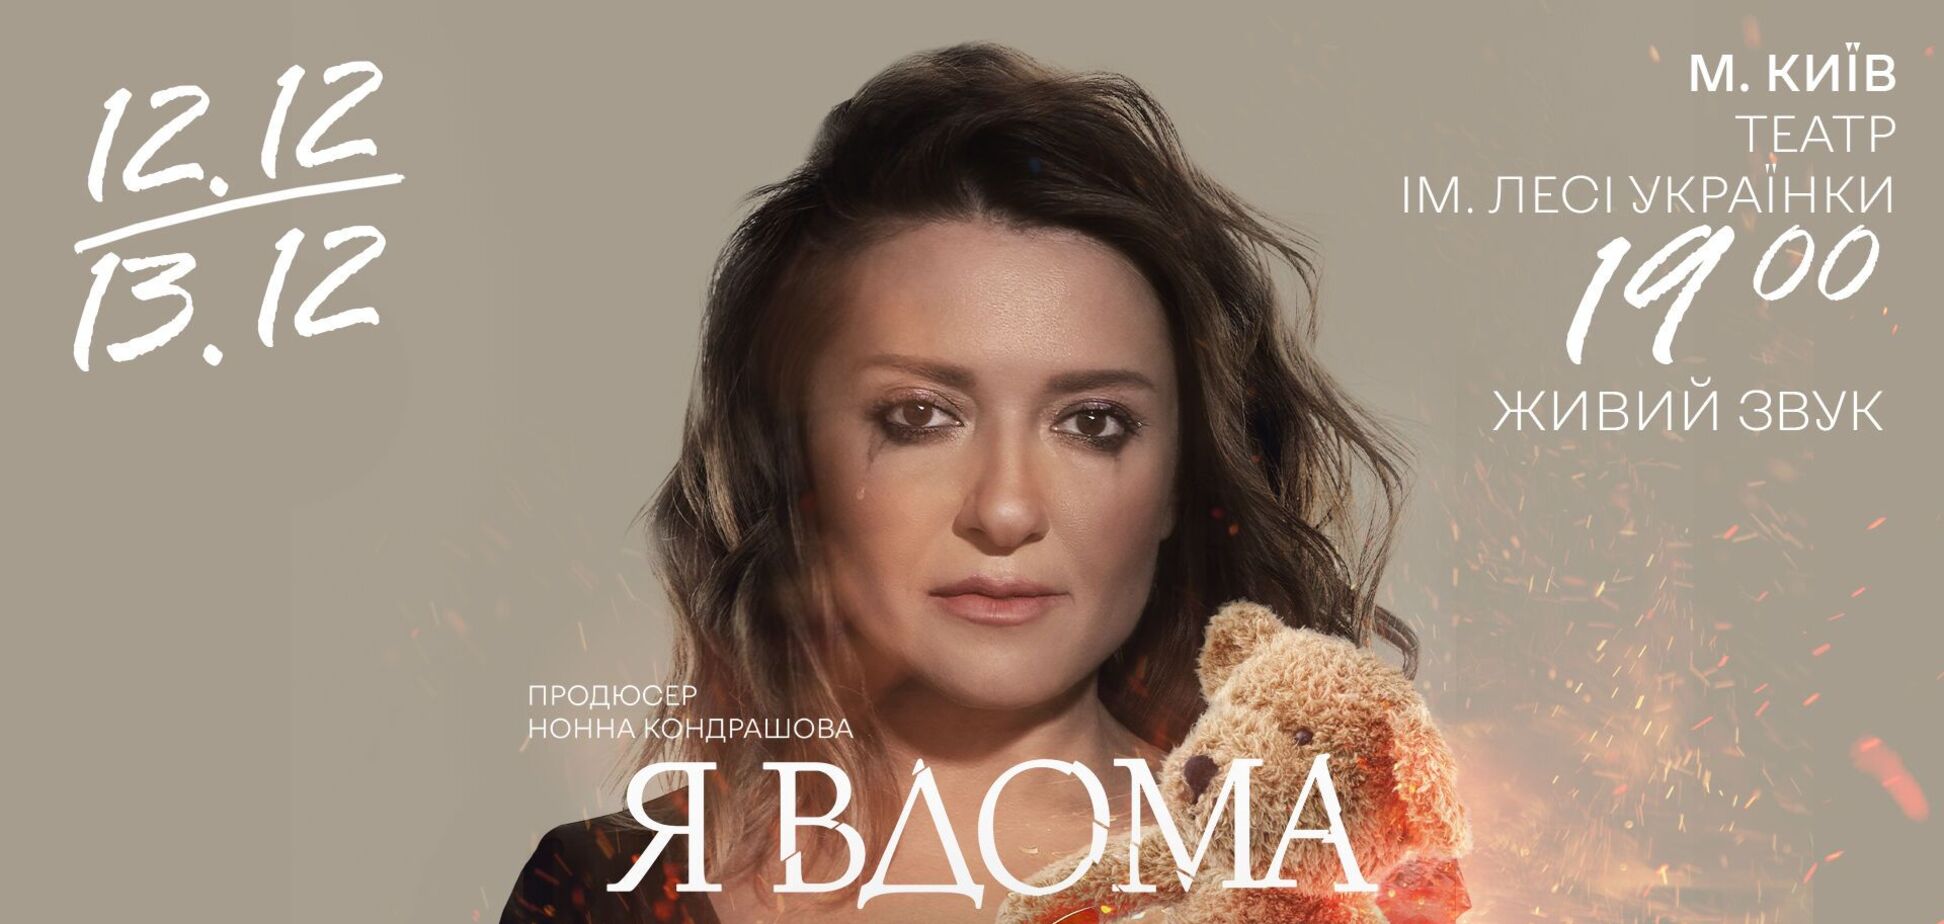 Могилевская, несмотря на блекауты, собрала аншлаг на моноспектакле 'Я дома' в Киеве